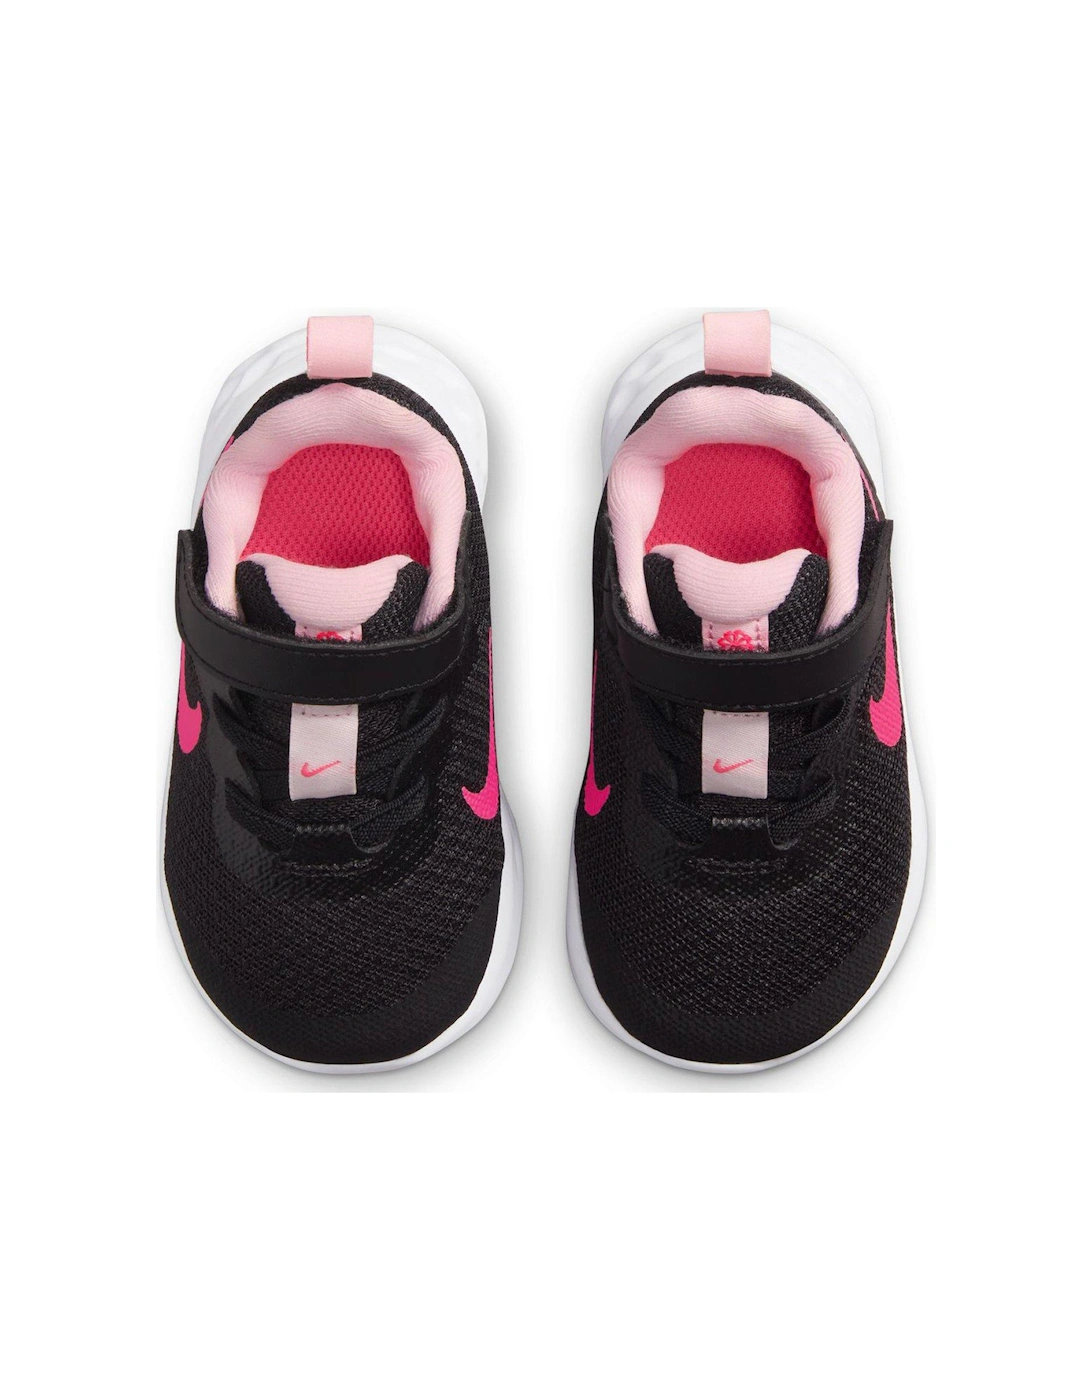 Infant Revolution 6 - Black/Pink